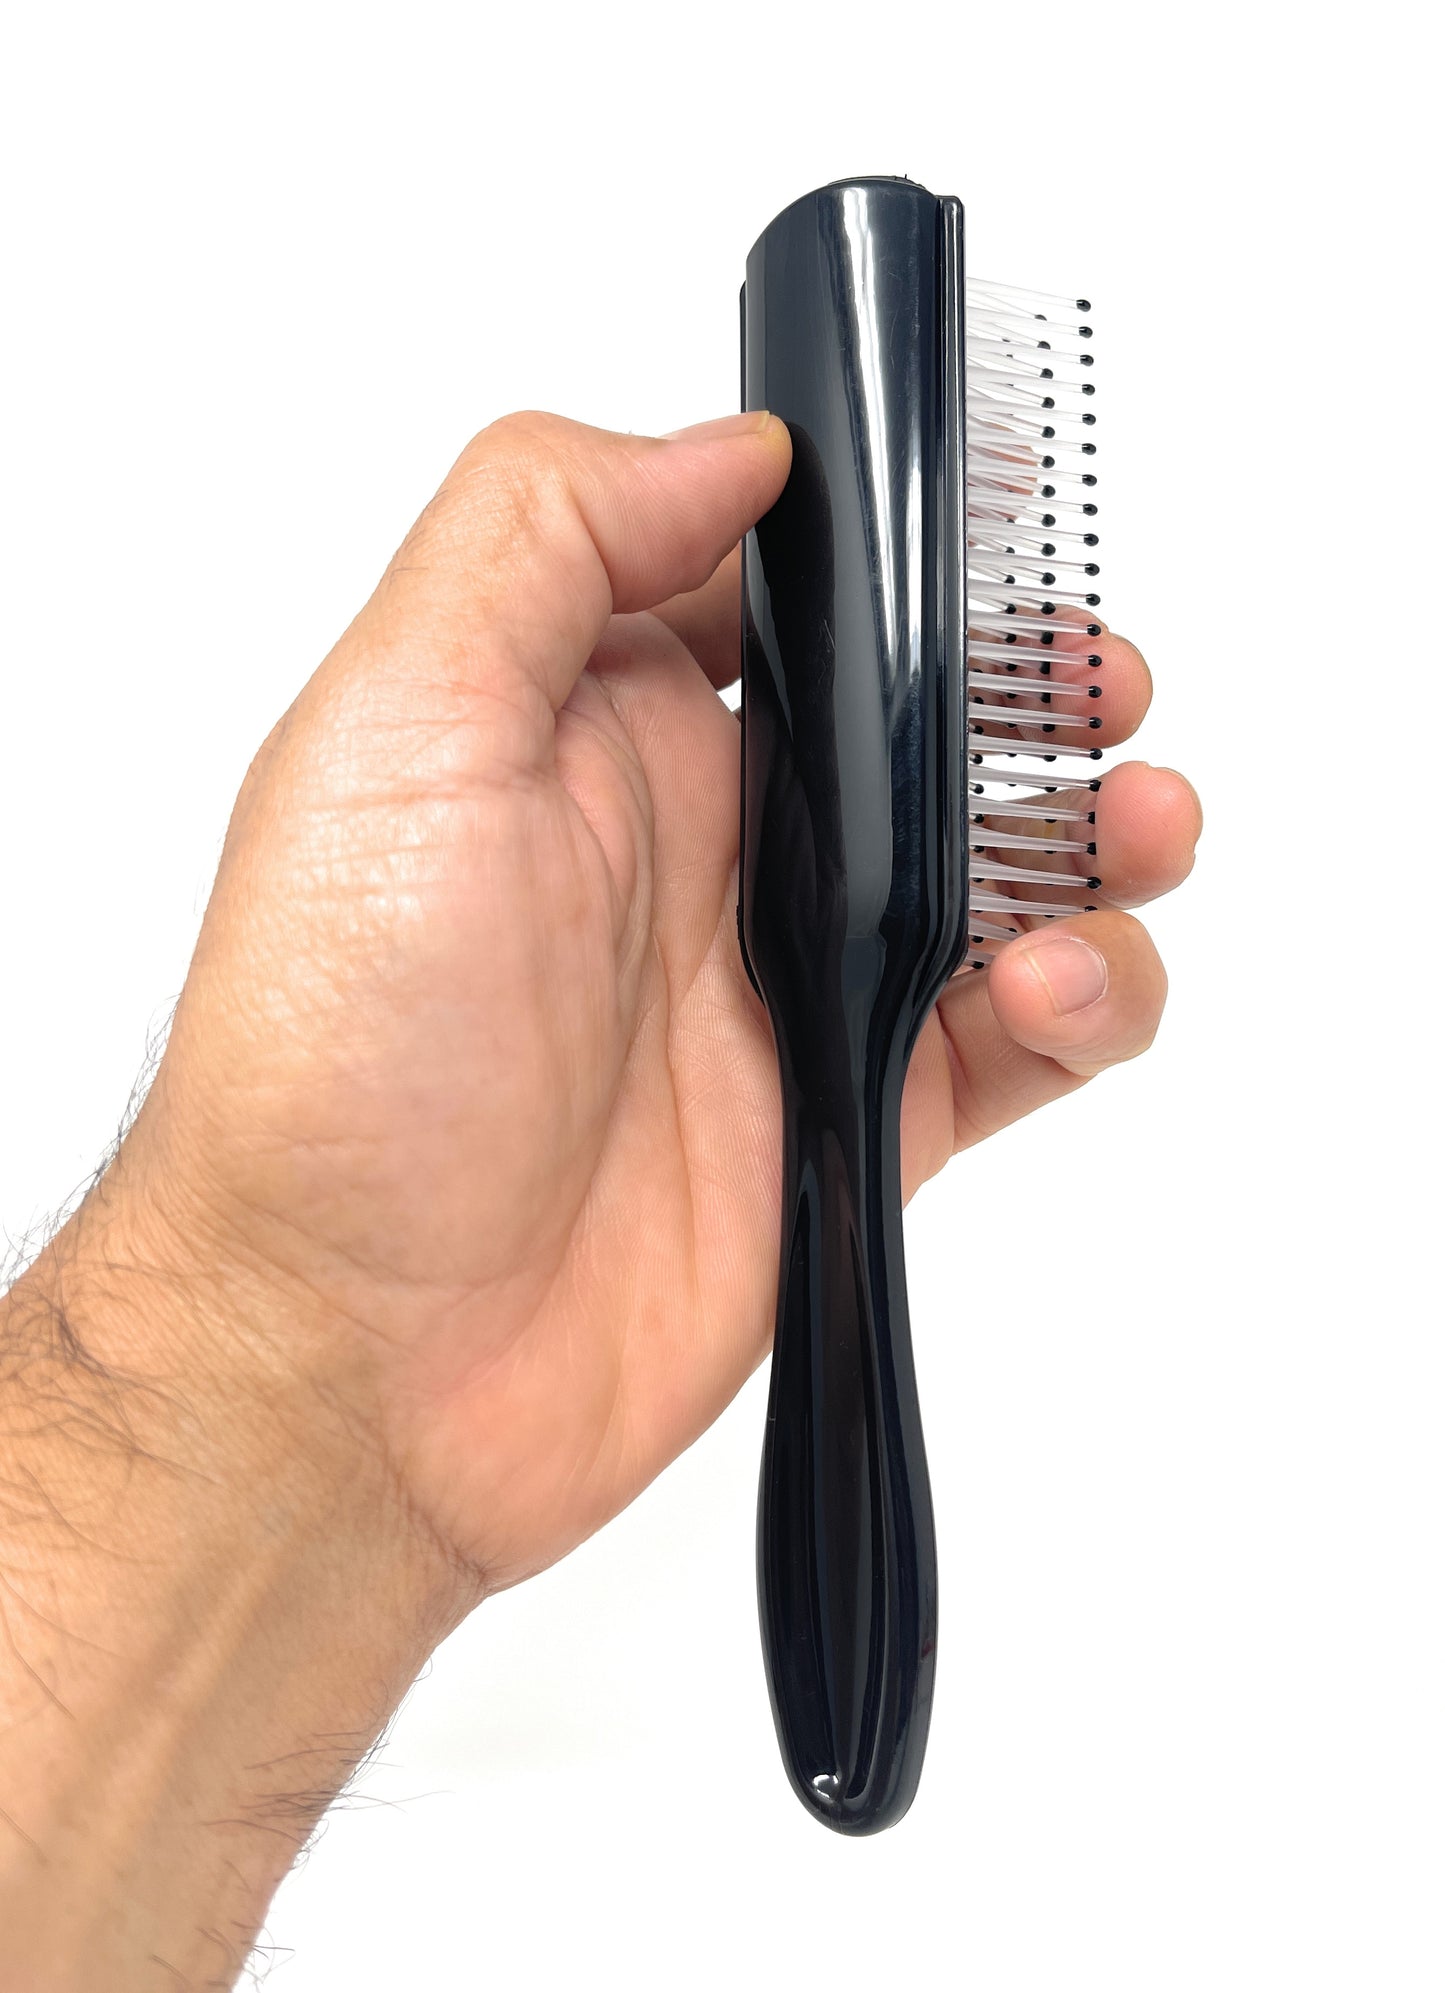 Scalpmaster Hair Brush Soft Flexible Teeth For Detangling Hair Brush Straightening Brush 1 Pc.